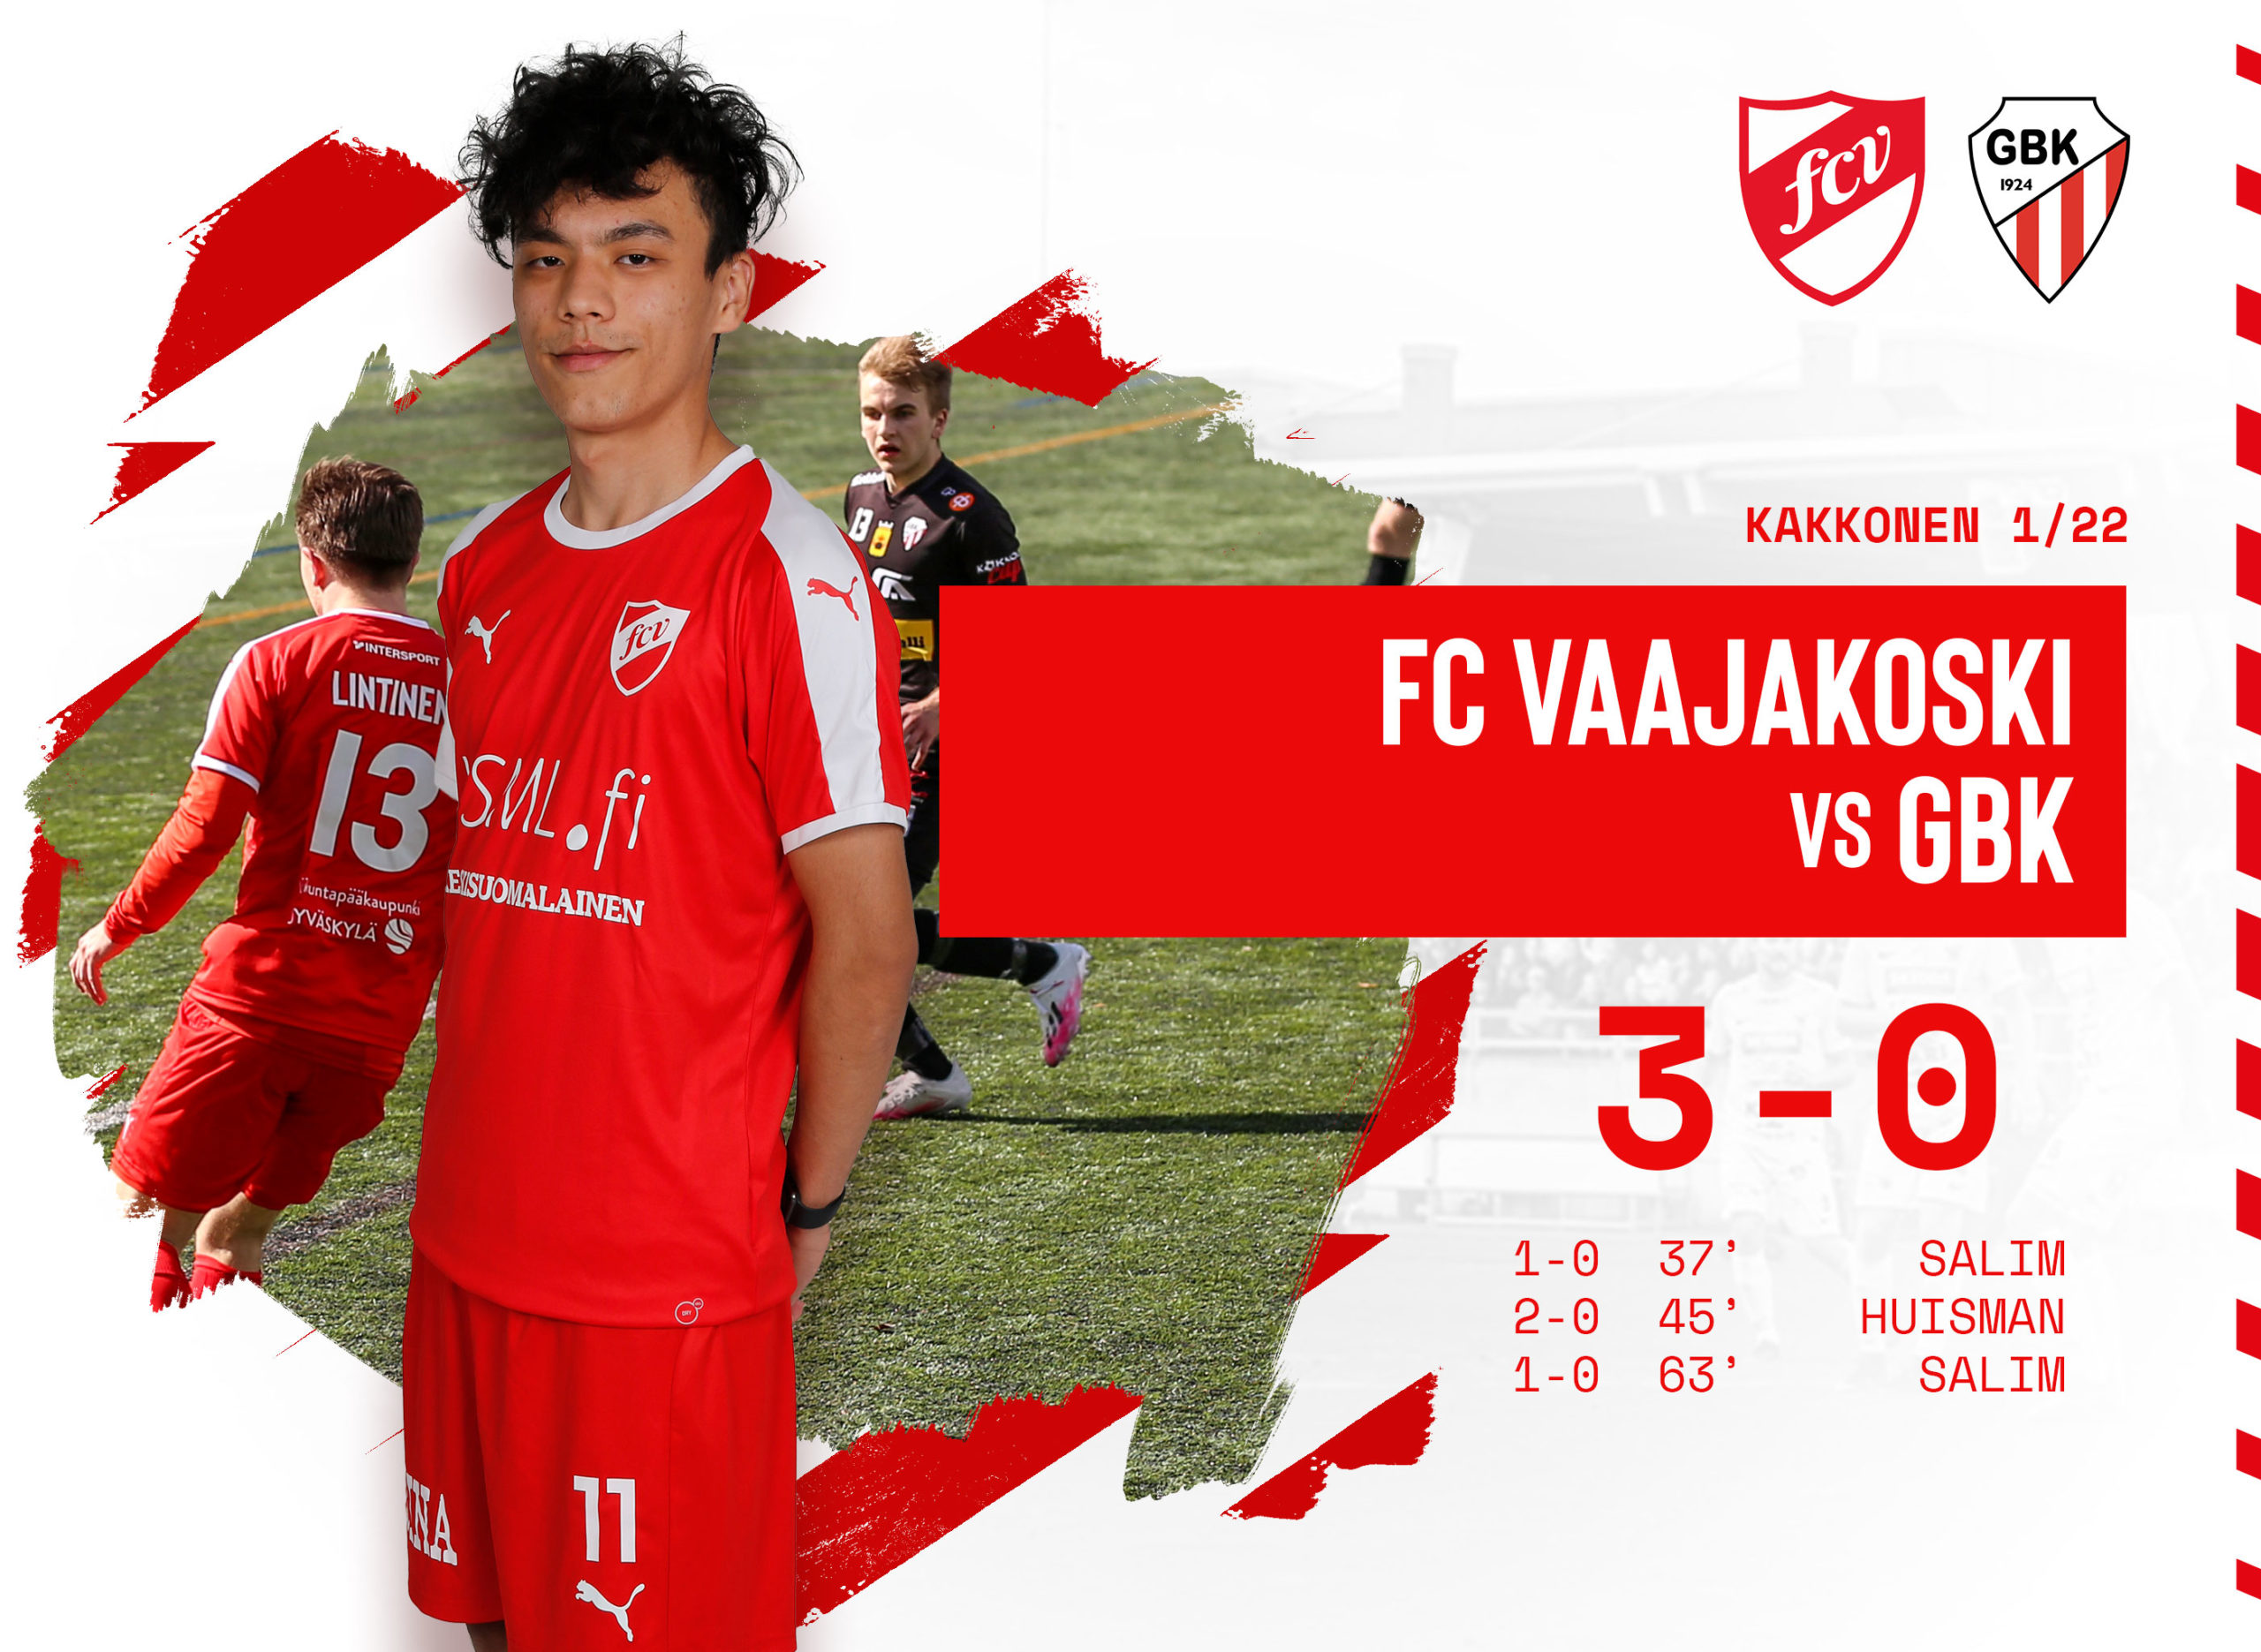 FC Vaajakoski - GBK 3-0